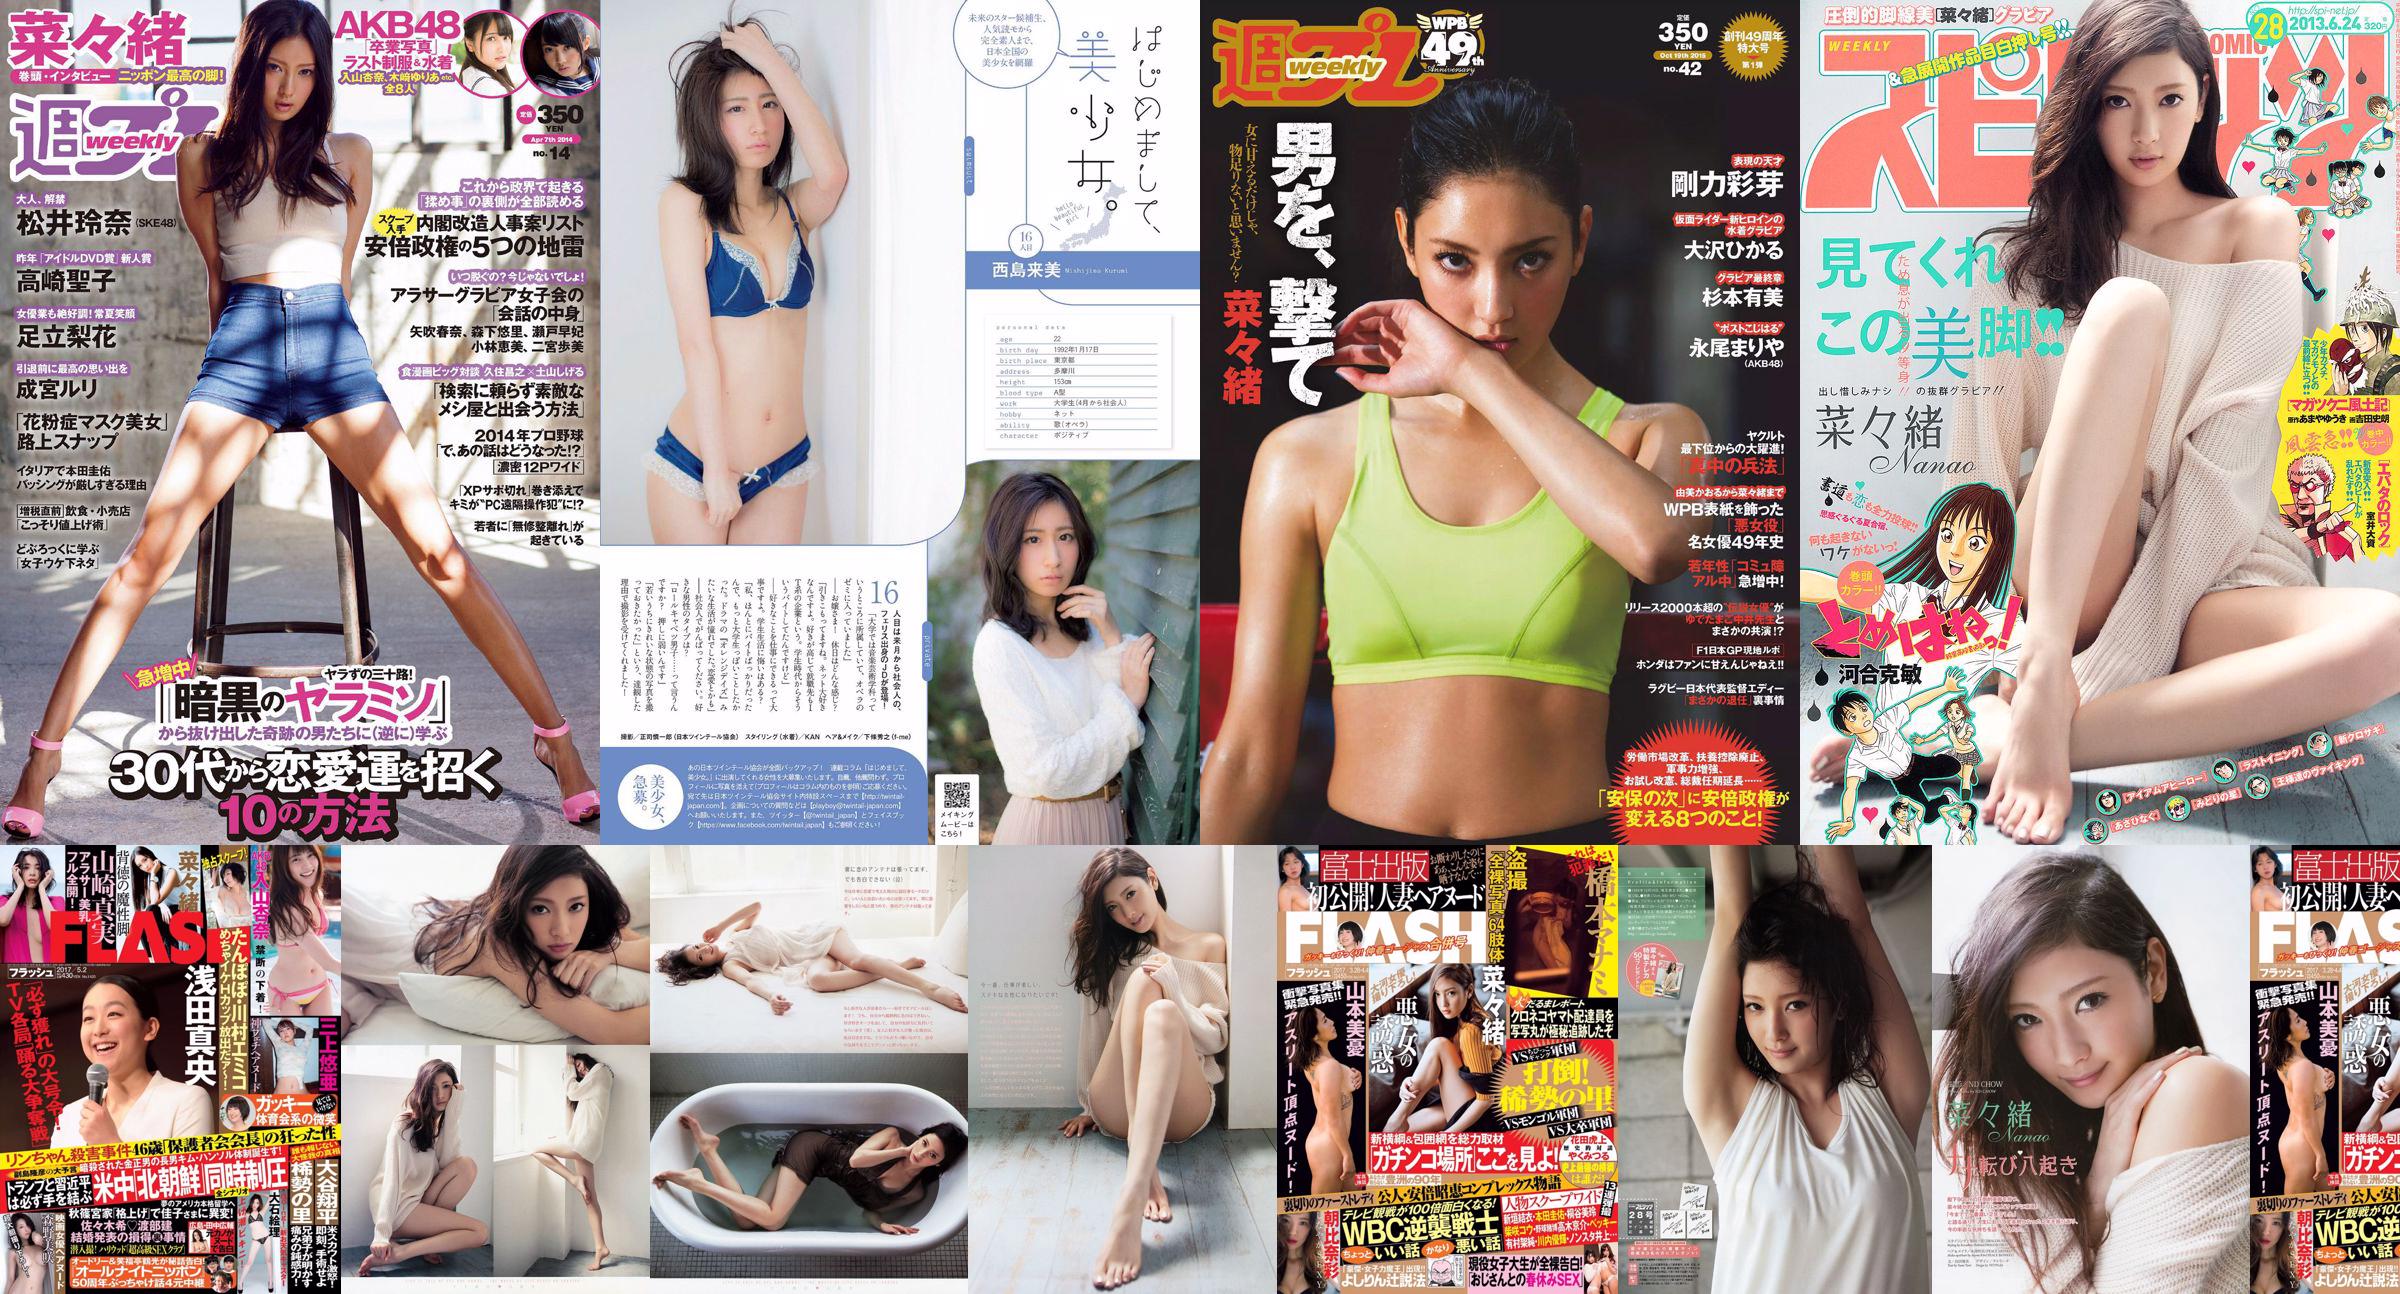 Nanao Yumi Sugimoto Hikaru Ohsawa Ayame Goriki Riona Nagao Mariya Nagao [Weekly Playboy] 2015 No.42 Photograph No.50b1ac หน้า 1